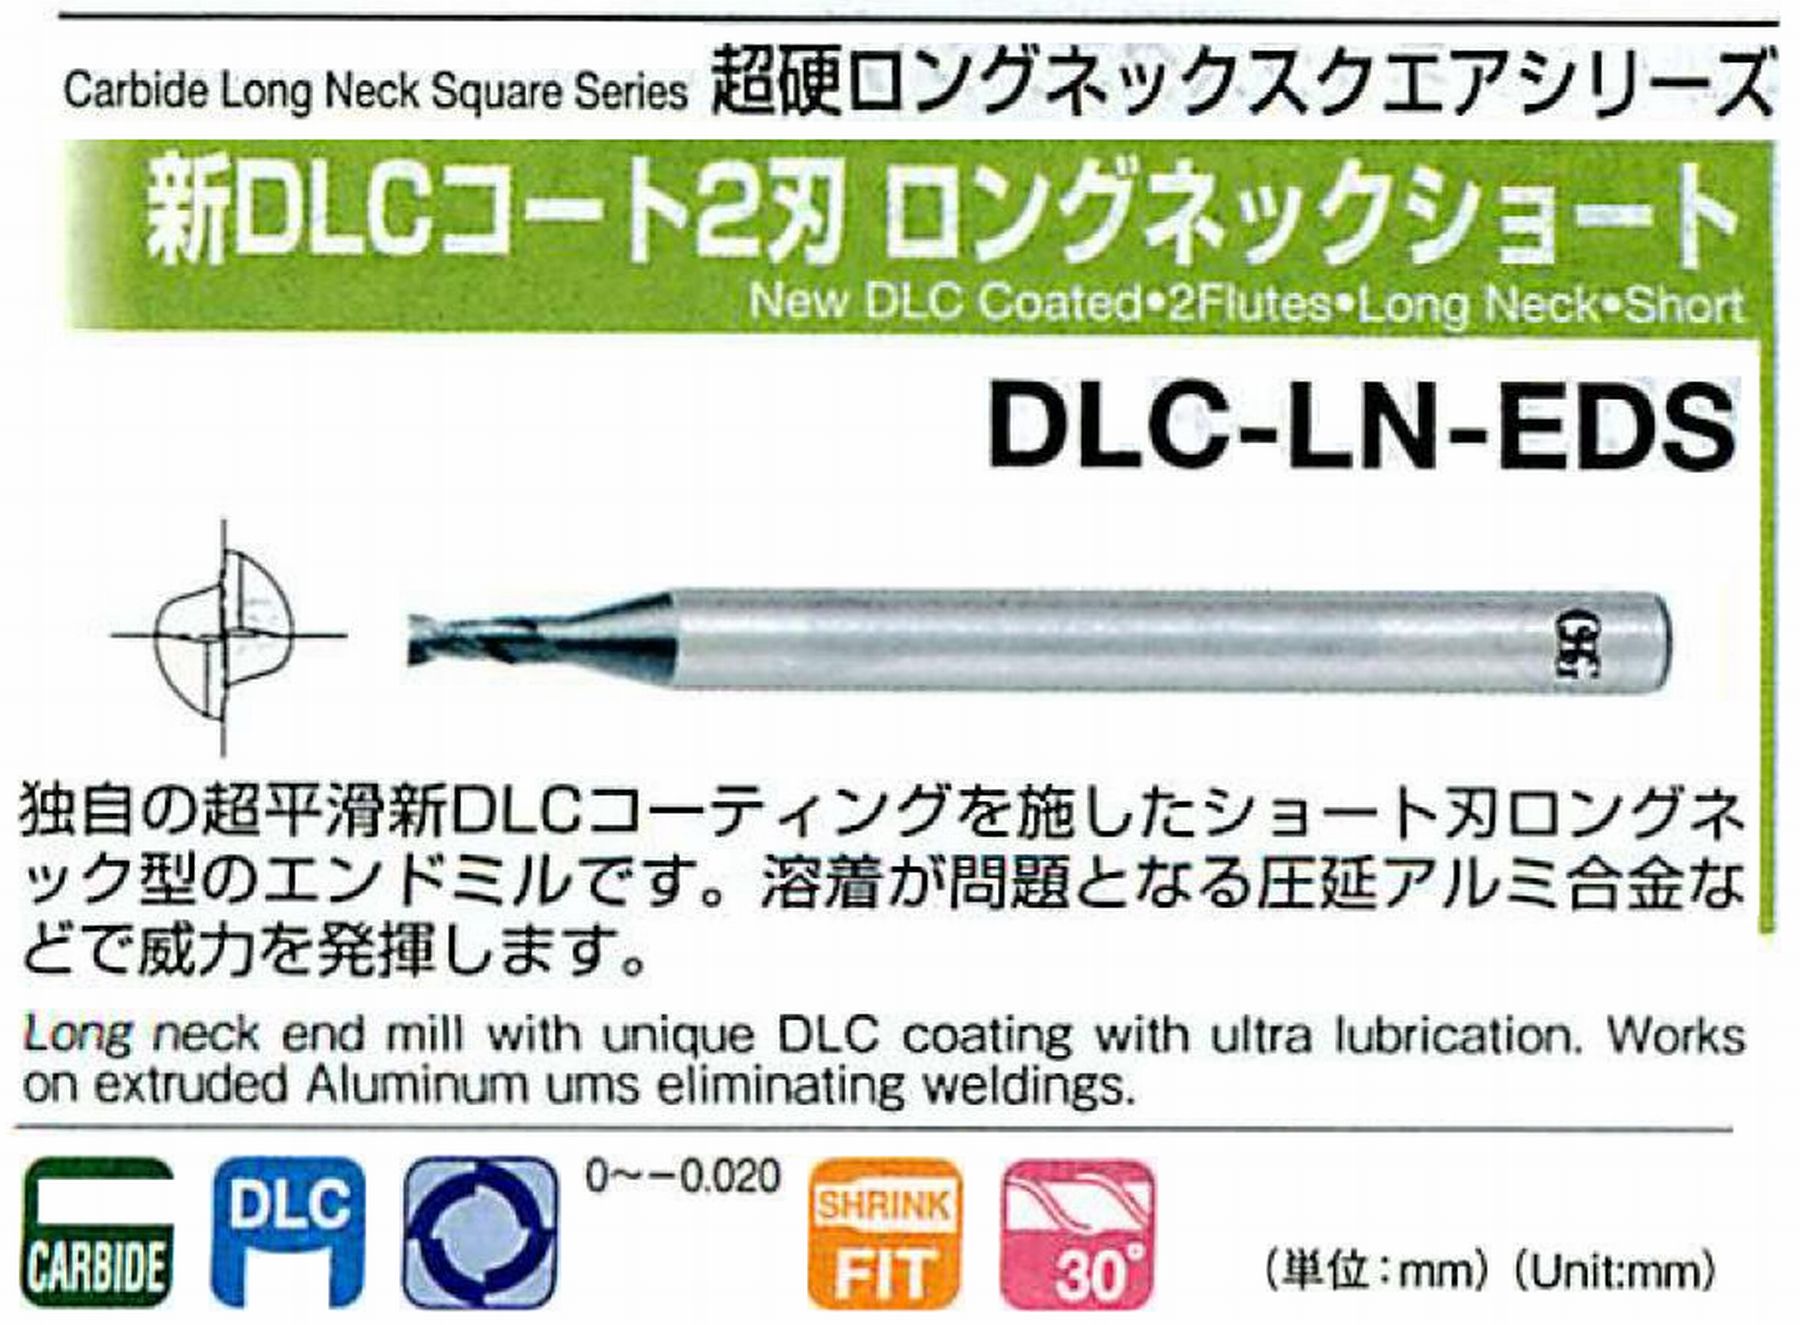 オーエスジー/OSG 新DLCコート2刃 ロングネックショート DLC-LN-EDS 外径×首下長0.5×2.5 全長60 刃長0.7 シャンク径6mm 首径0.45